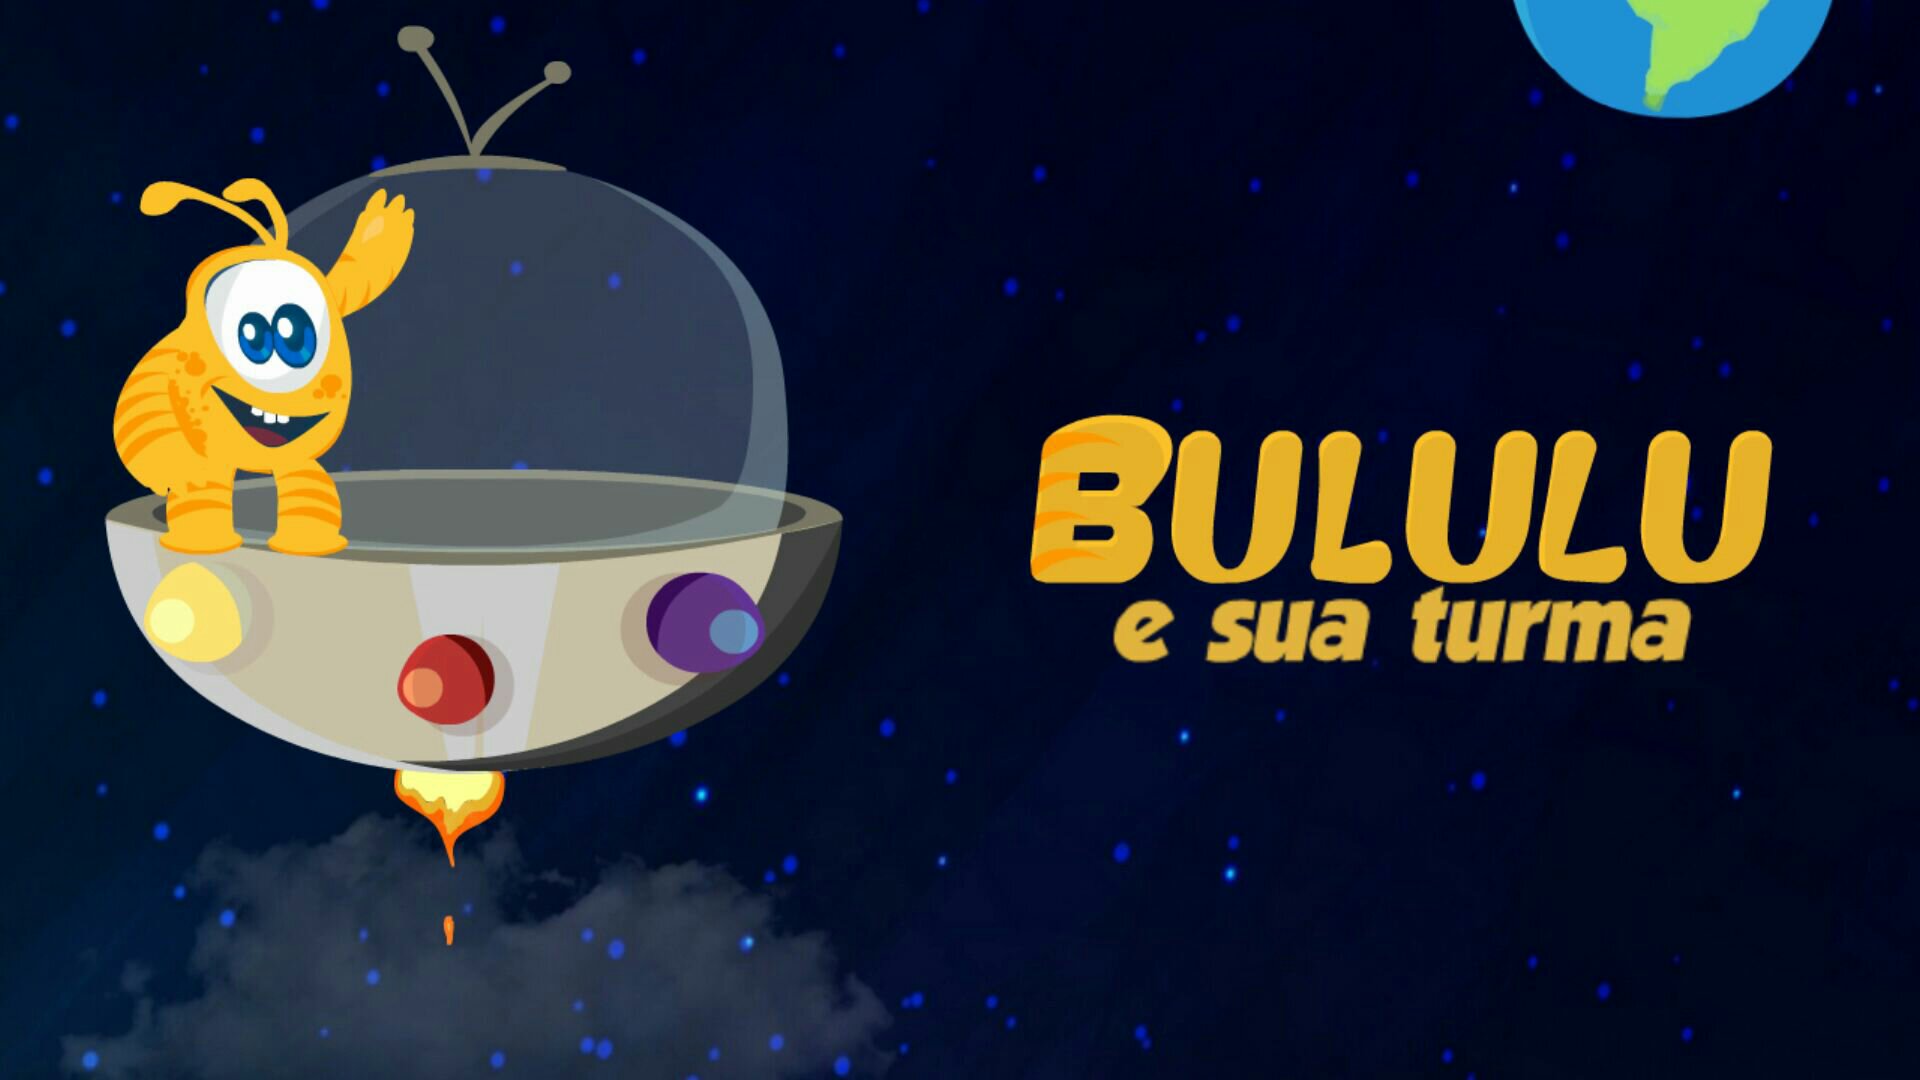 Personagem infantil Bululu criado em Minas Gerais e lança clipe animado